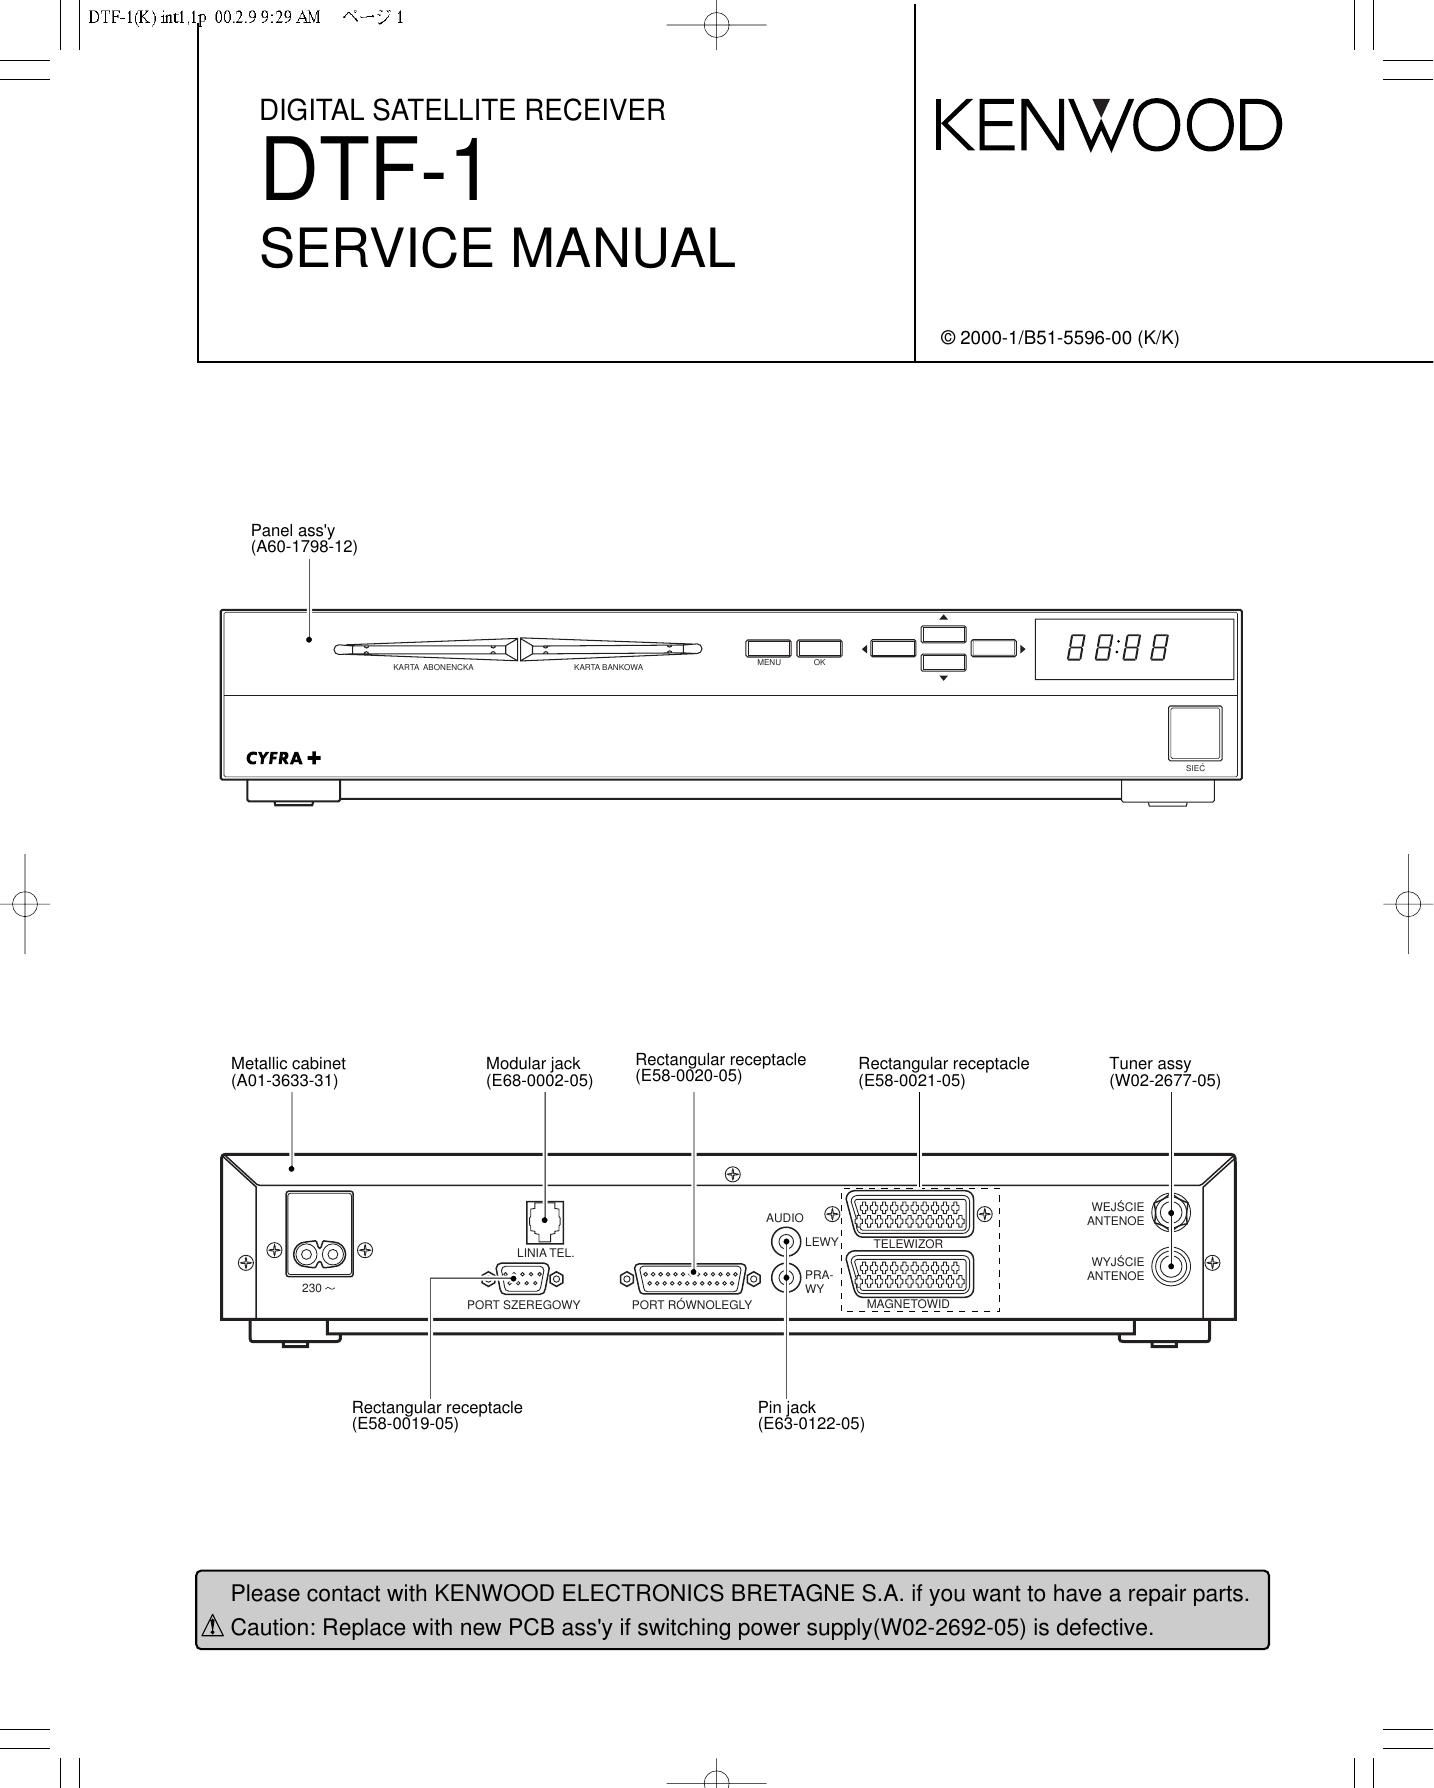 Kenwood DTF 1 Service Manual